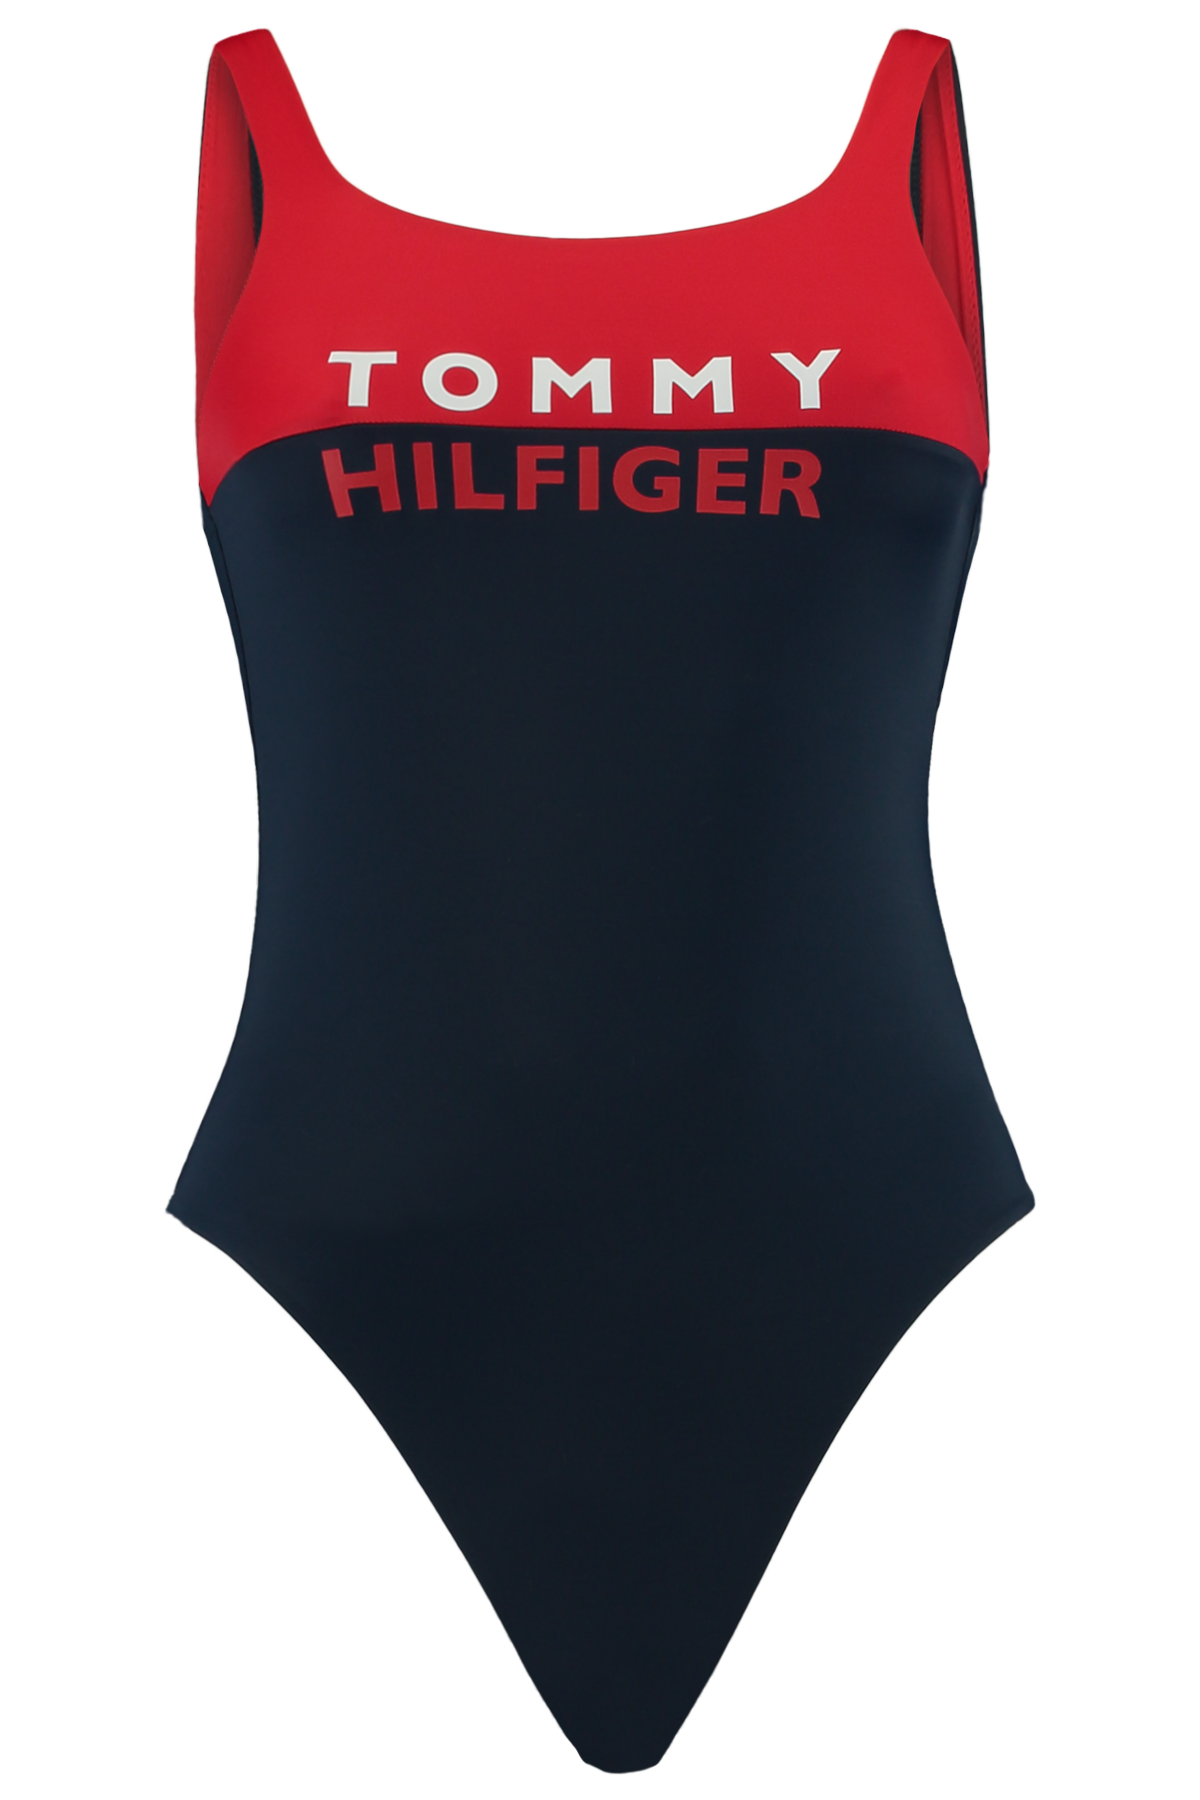 Damen Badeanzug Tommy Hilfiger Rot Online Kaufen